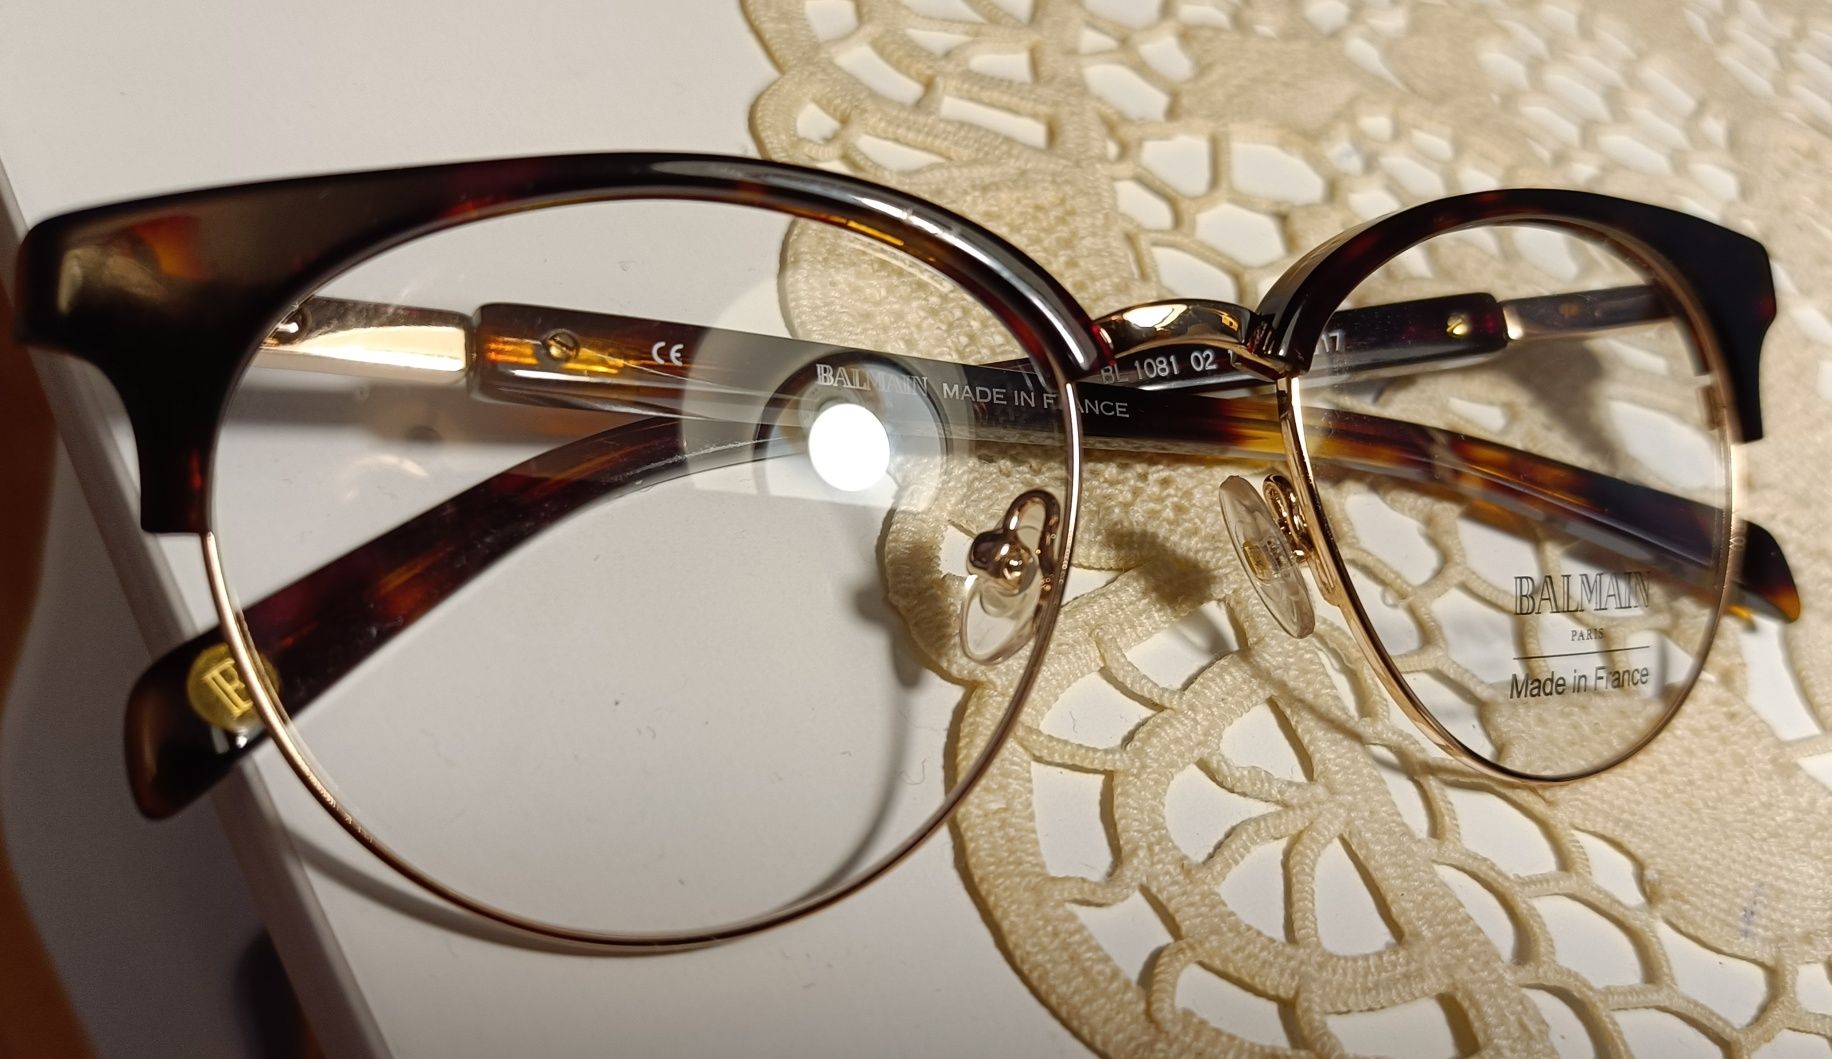 Oprawki na okulary korekcyjne